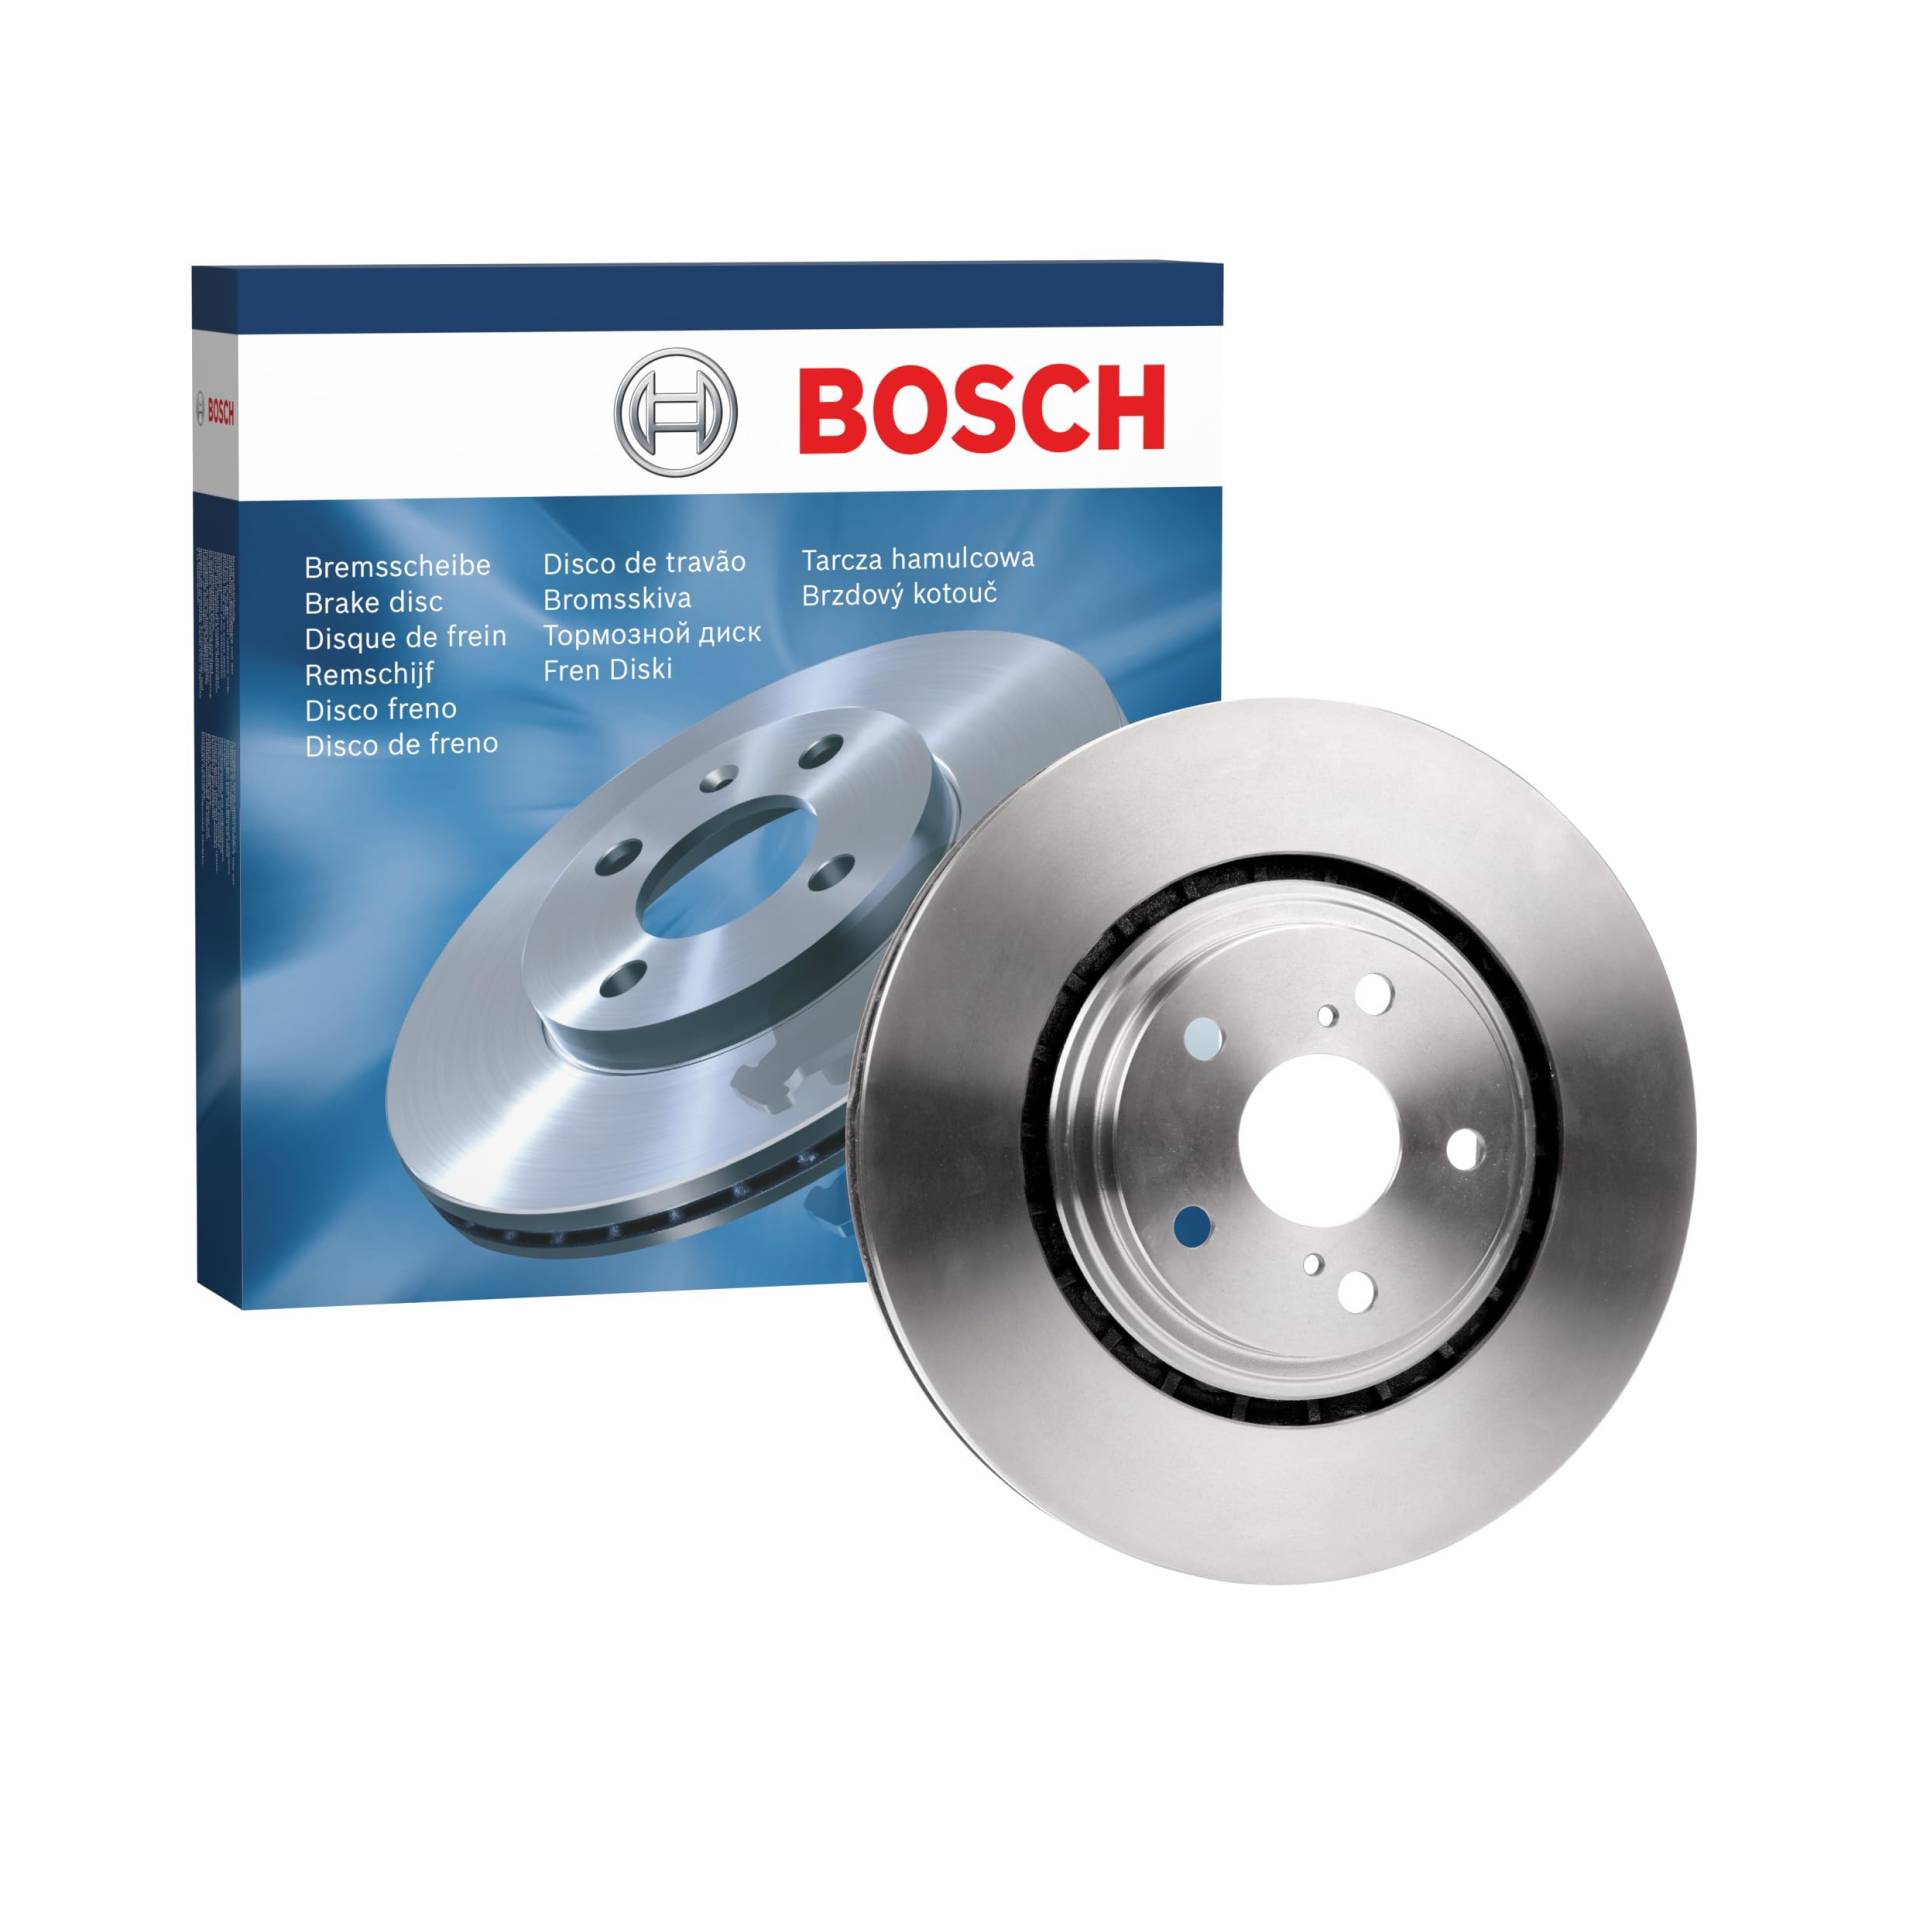 Bosch BD1798 Bremsscheiben - Vorderachse - ECE-R90 Zertifizierung - eine Bremsscheibe von Bosch Automotive